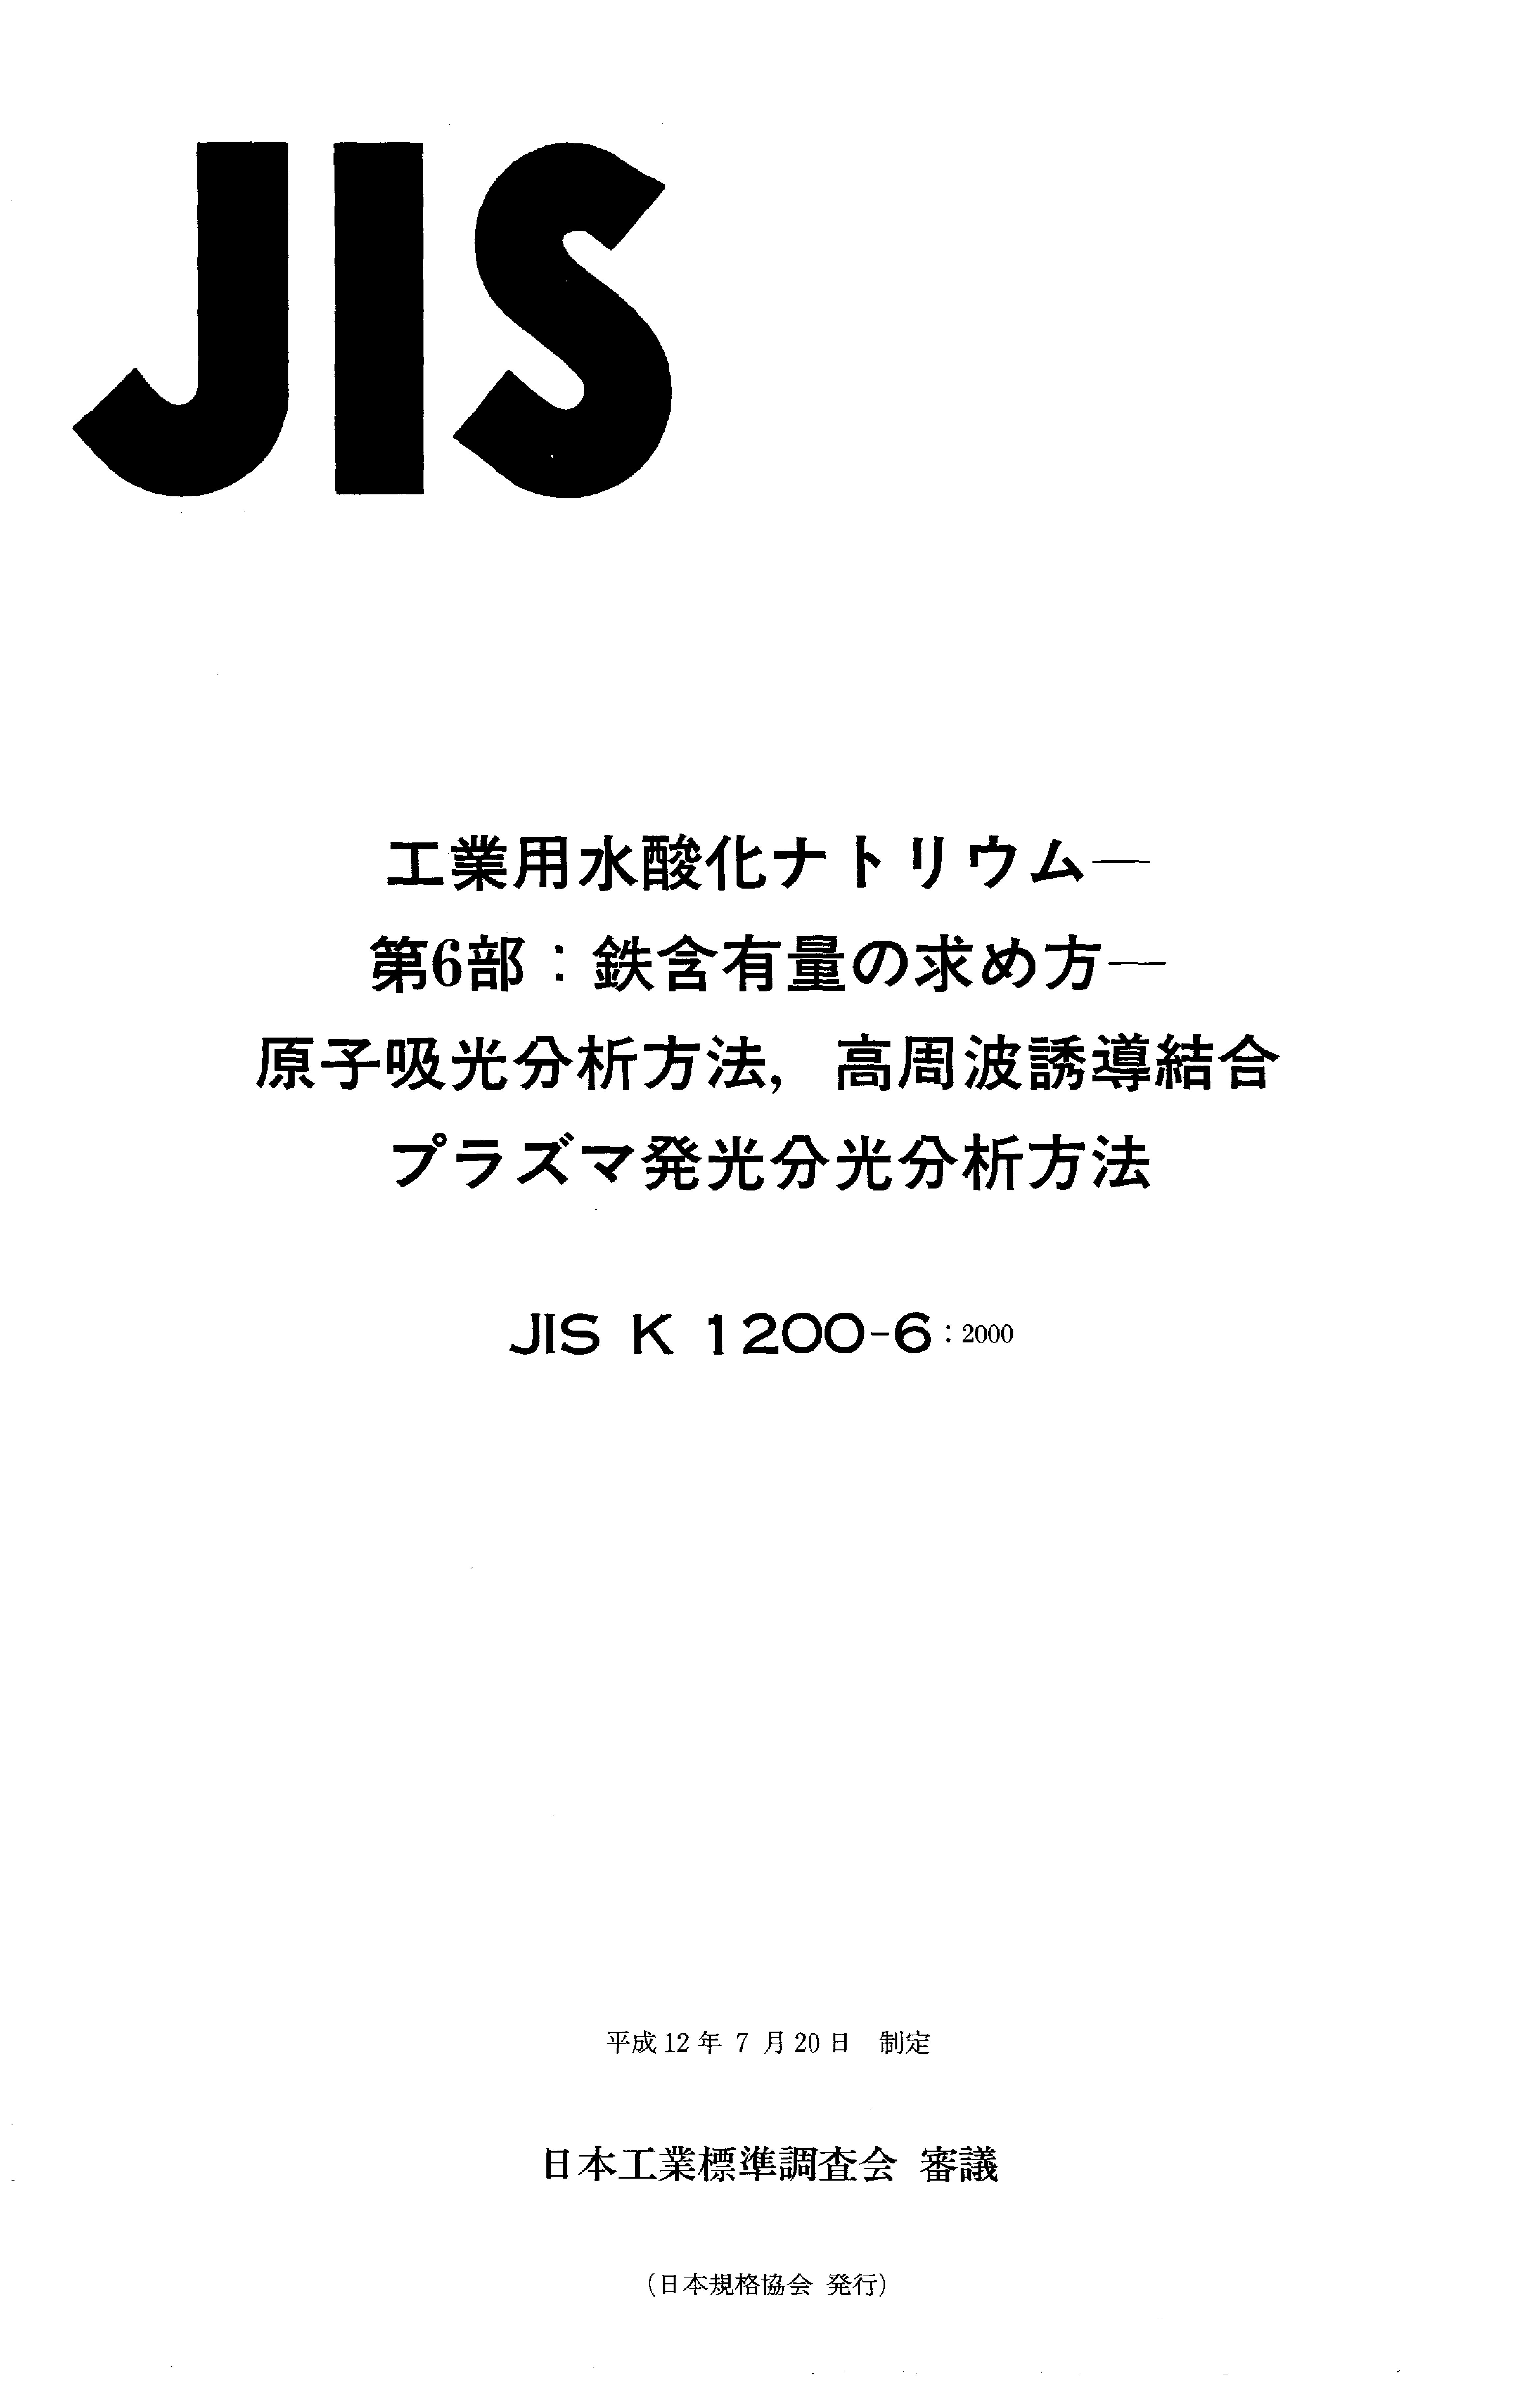 JIS K 1200-6:2000封面图